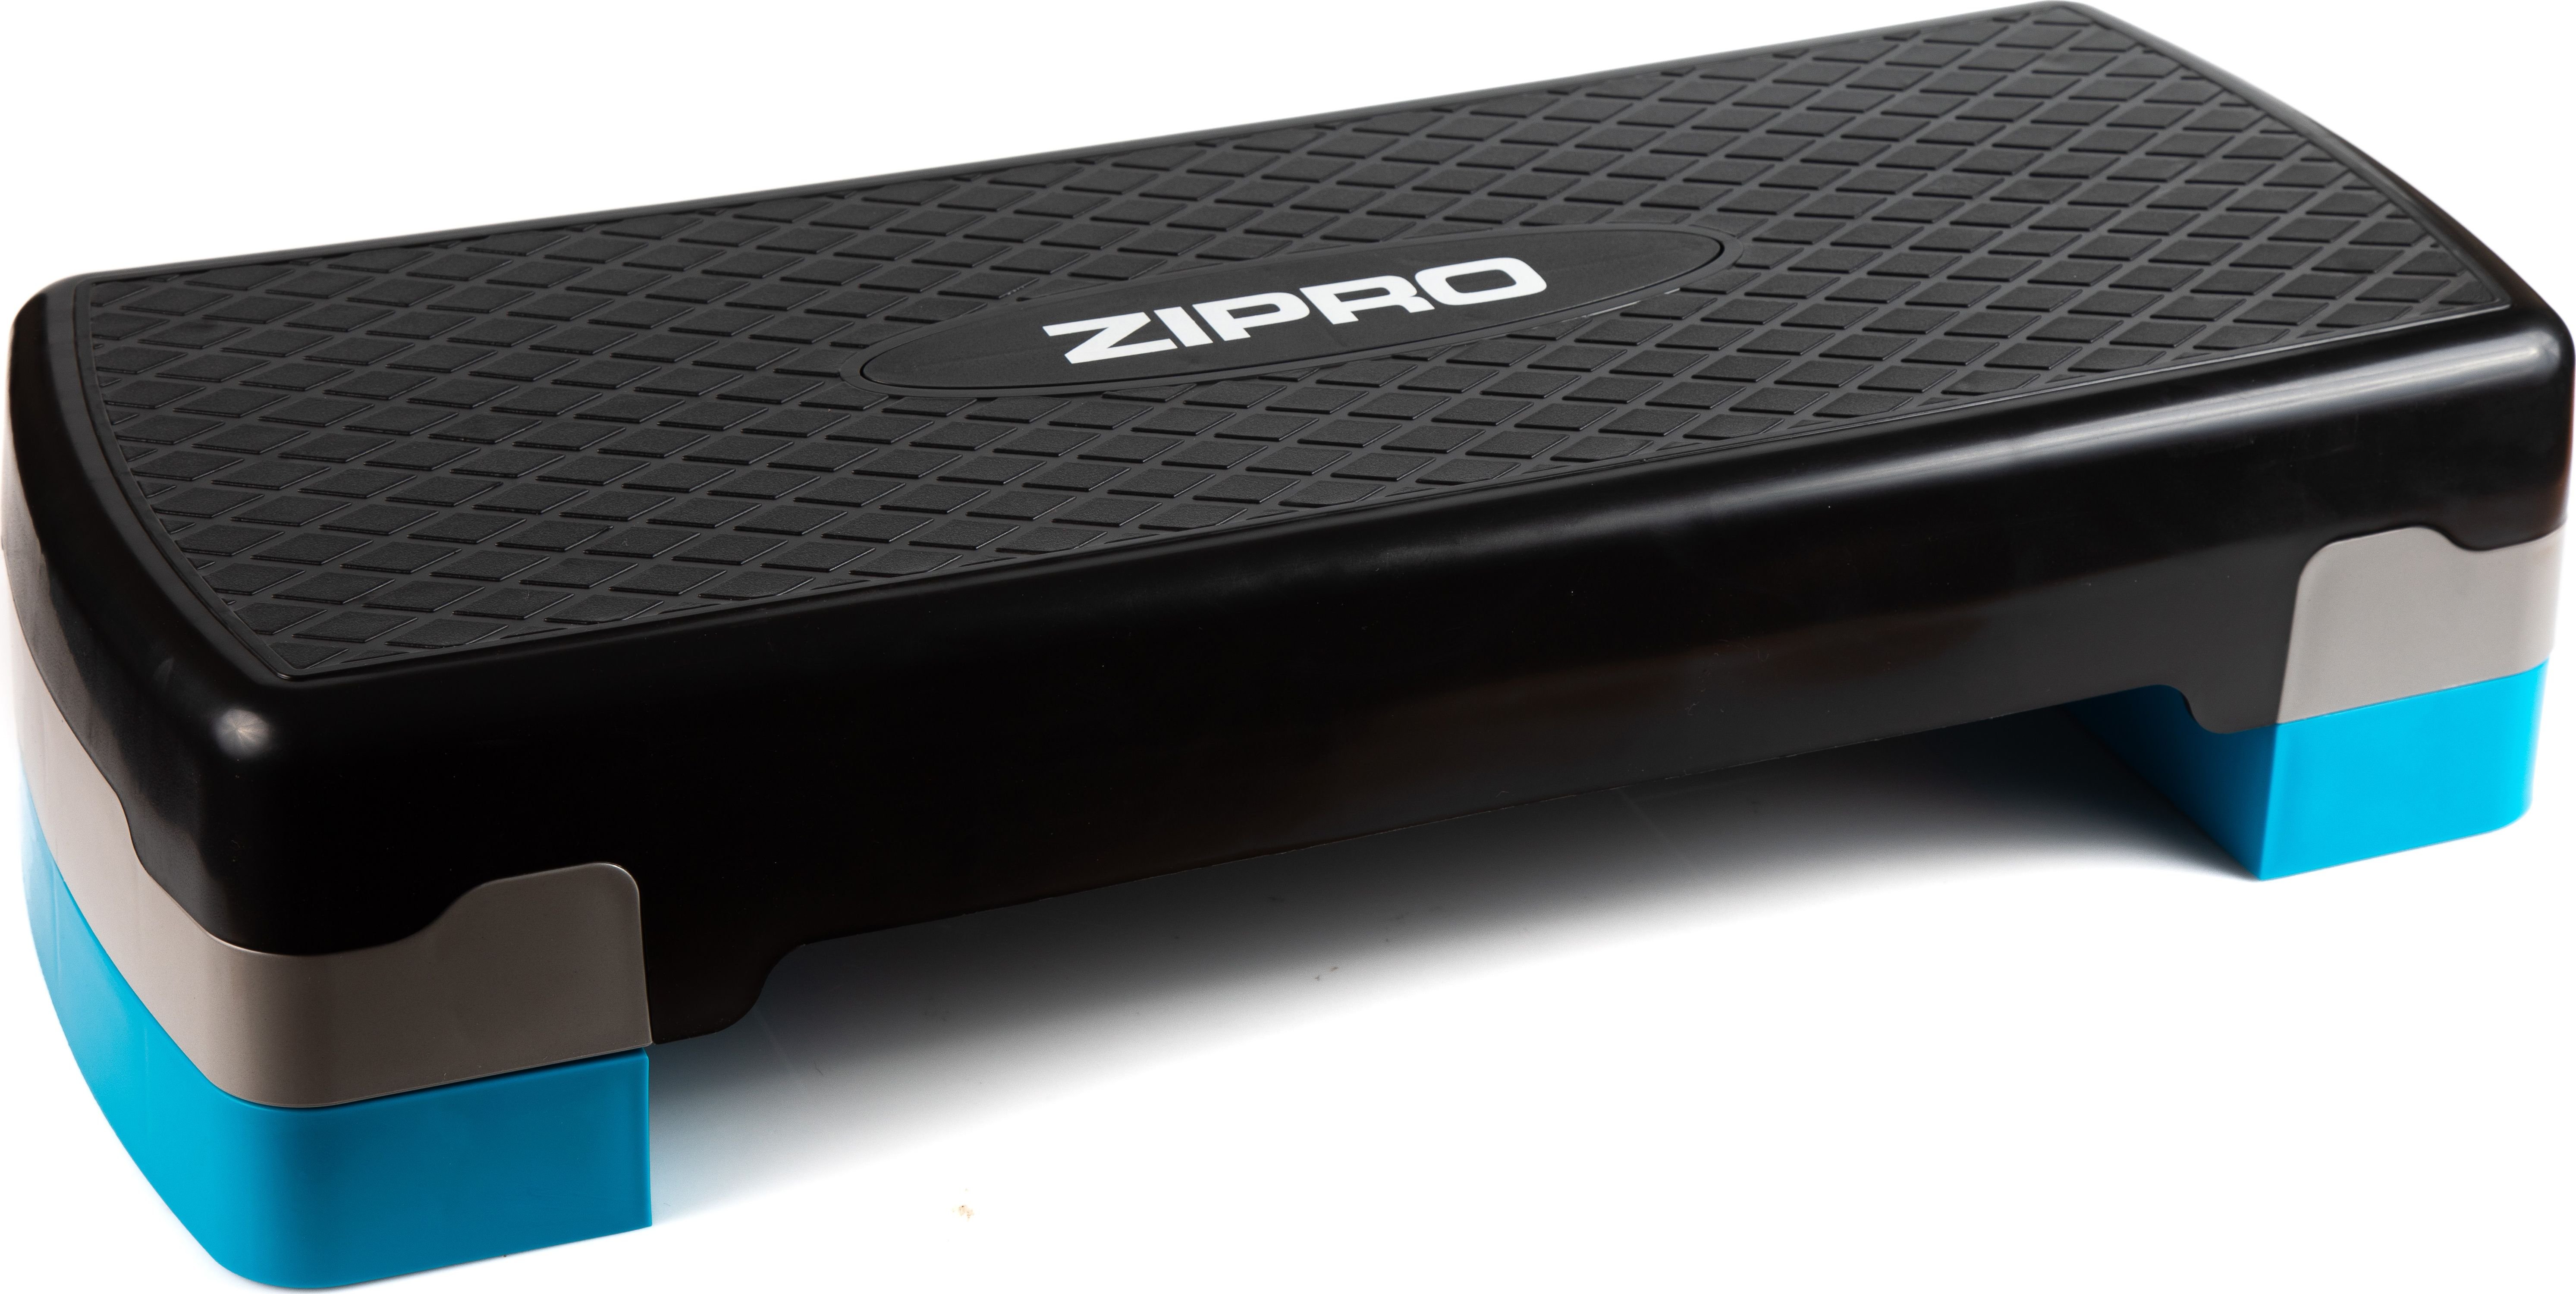 Степ-платформа Zipro для аэробики с регулировкой высоты (10-15см)